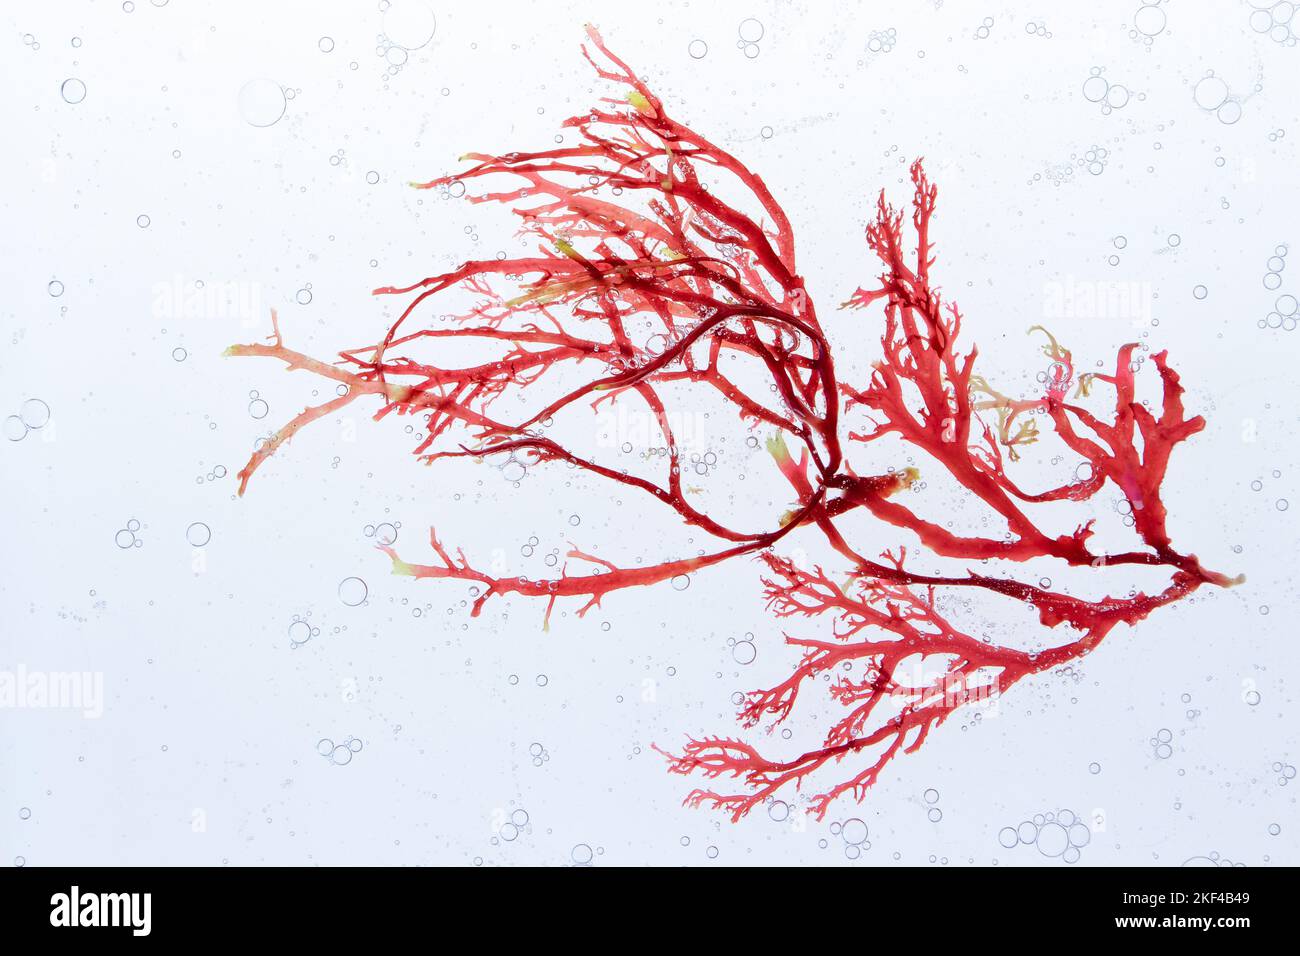 Branca di alghe rosse e bolle d'aria nell'acqua. Foto Stock